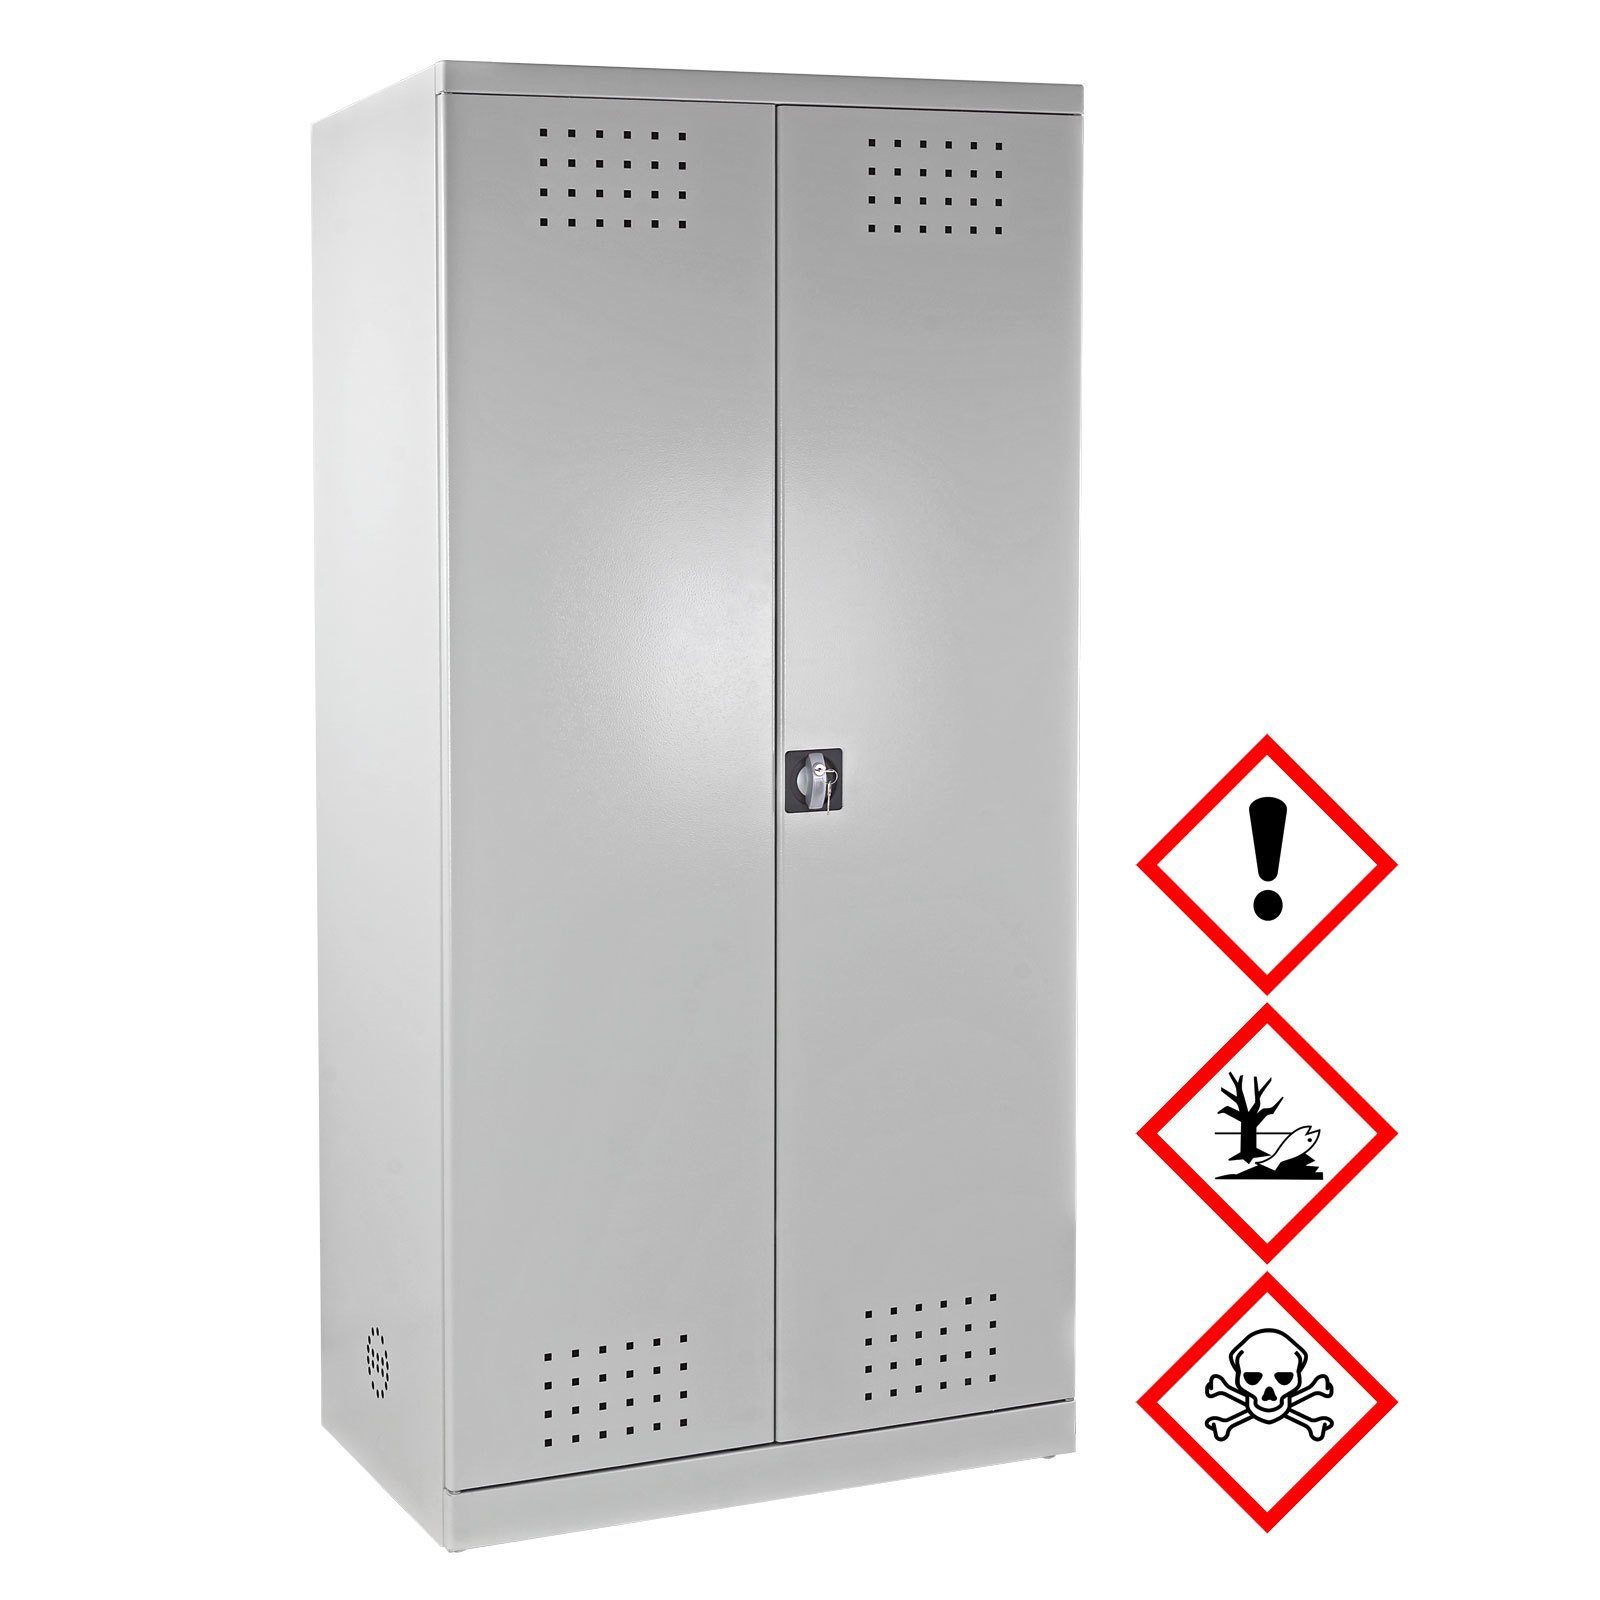 Medizinschrank Sicherheitsschrank ADB Grau / Stahl Chemikalien ADB aus für Gefahrstoffschrank